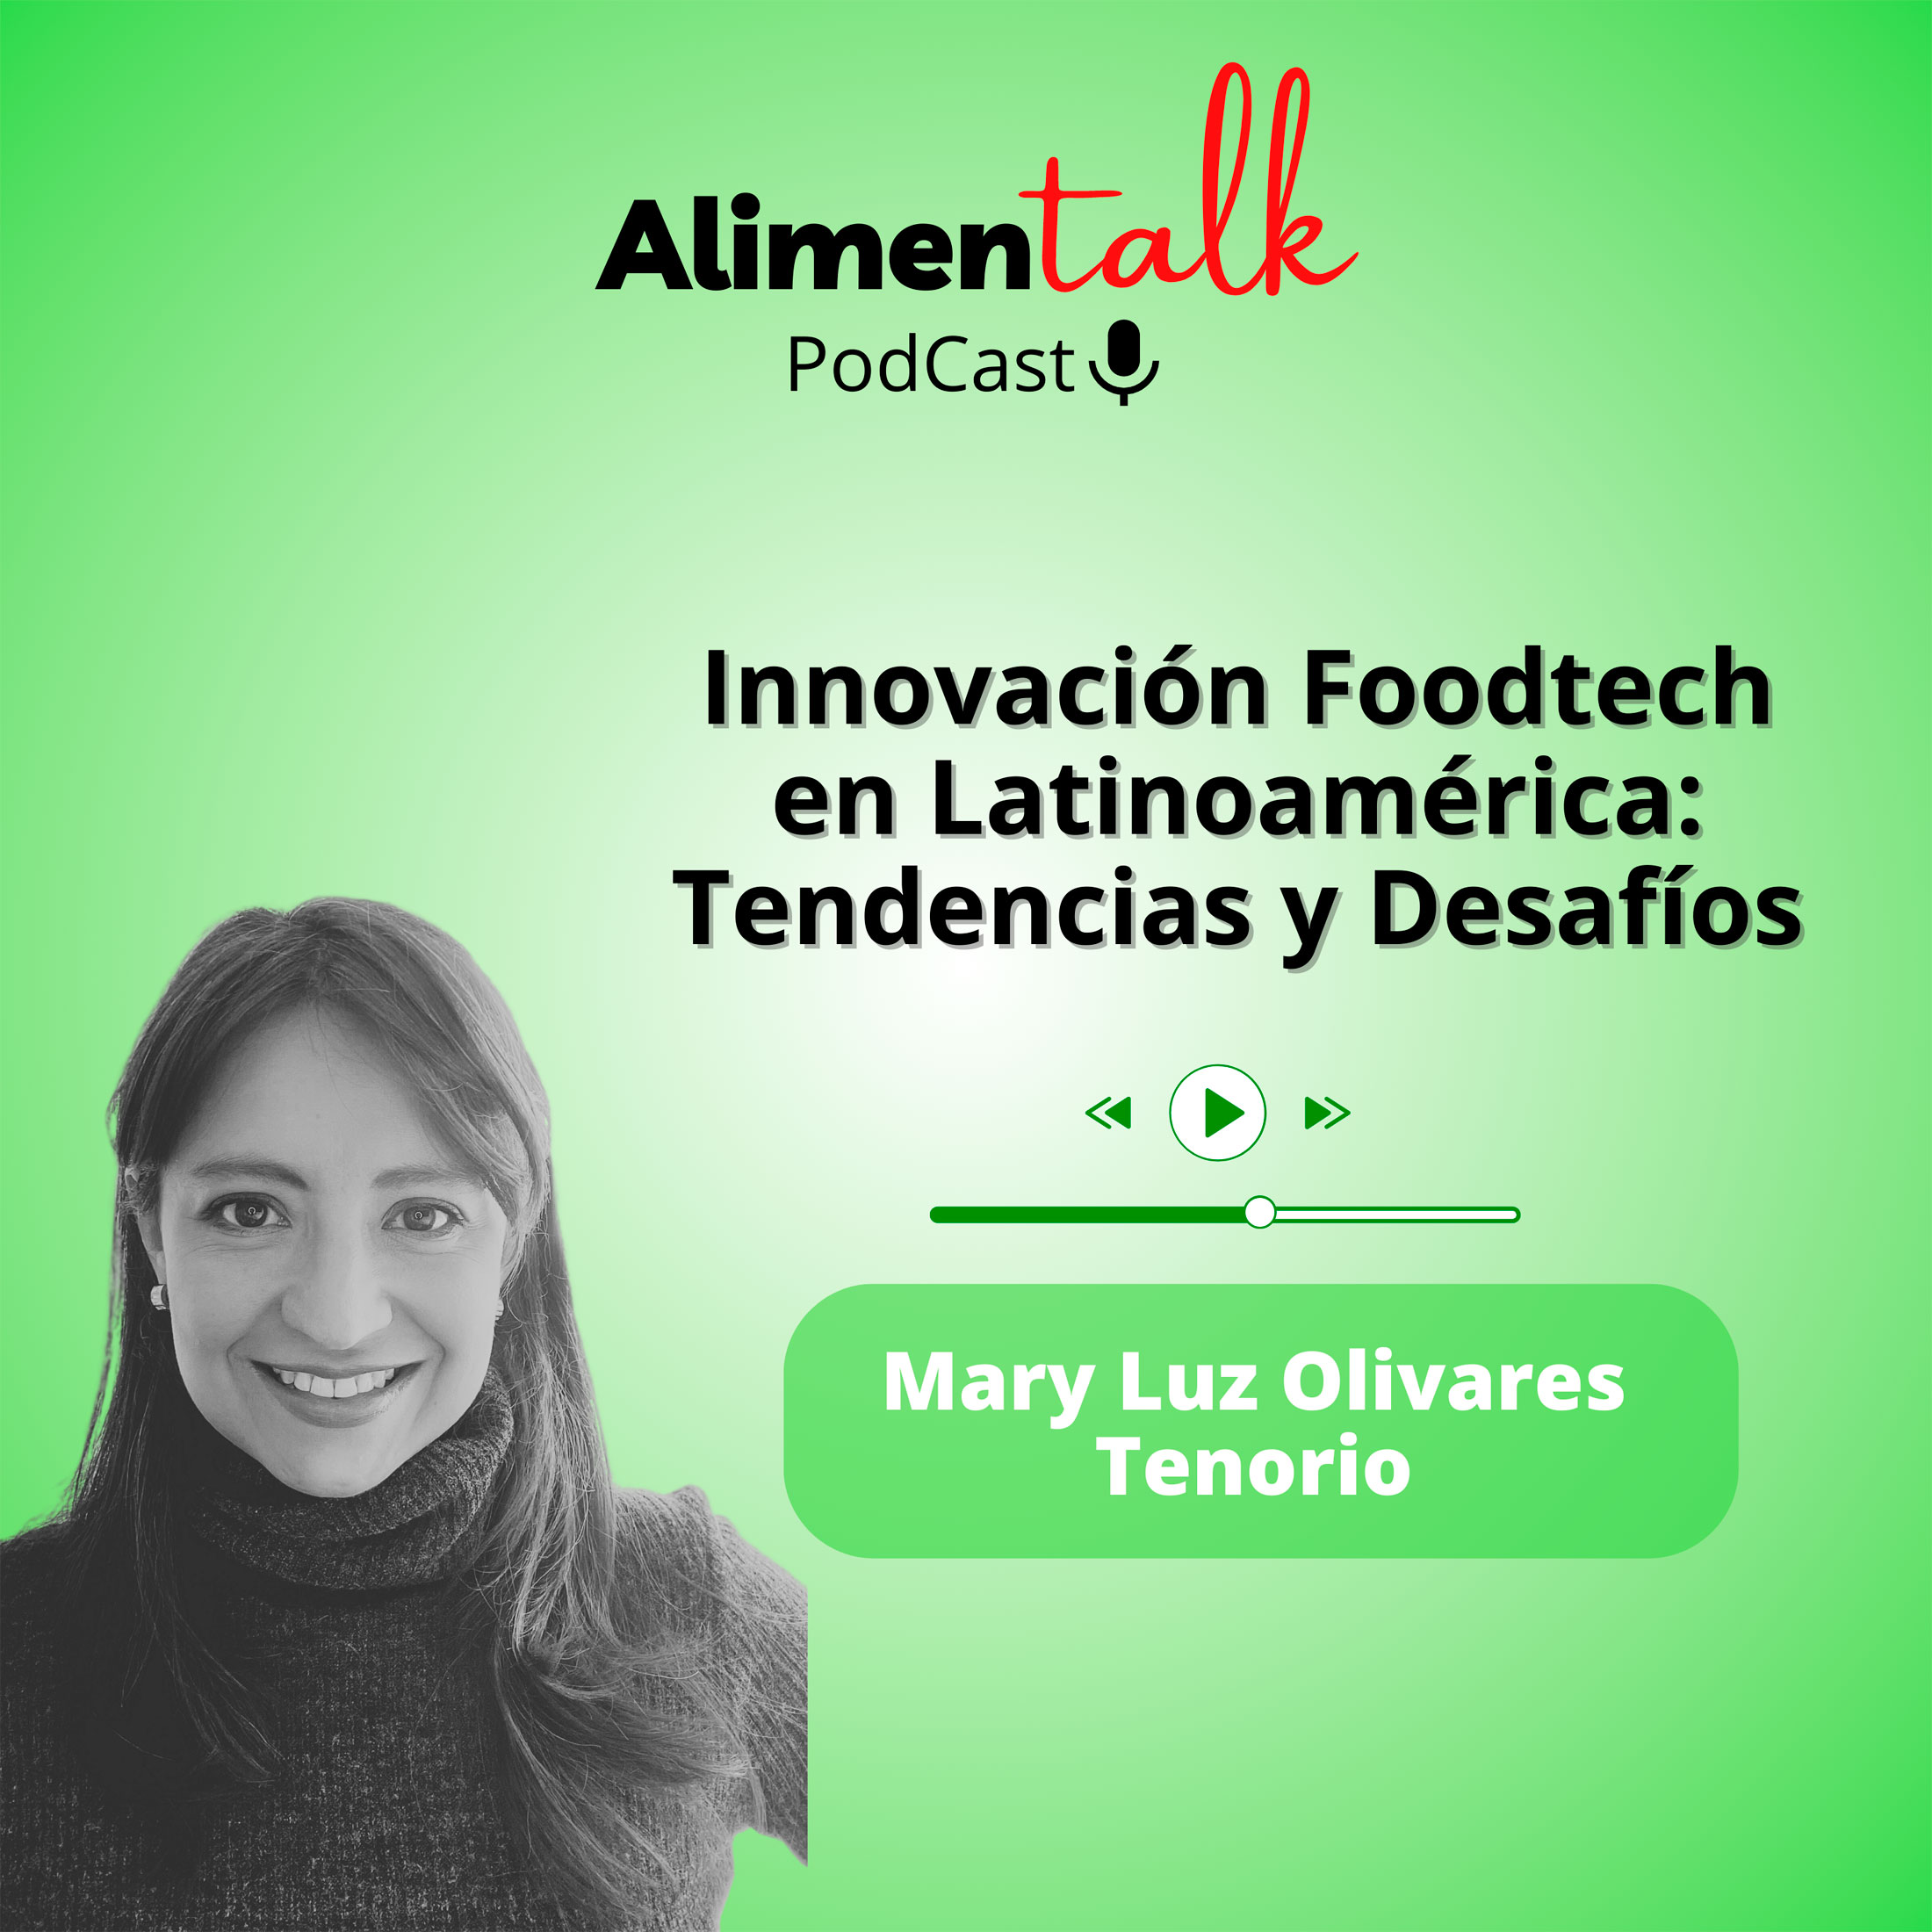 AlimenTalk podCast: Innovación Foodtech en Latinoamérica